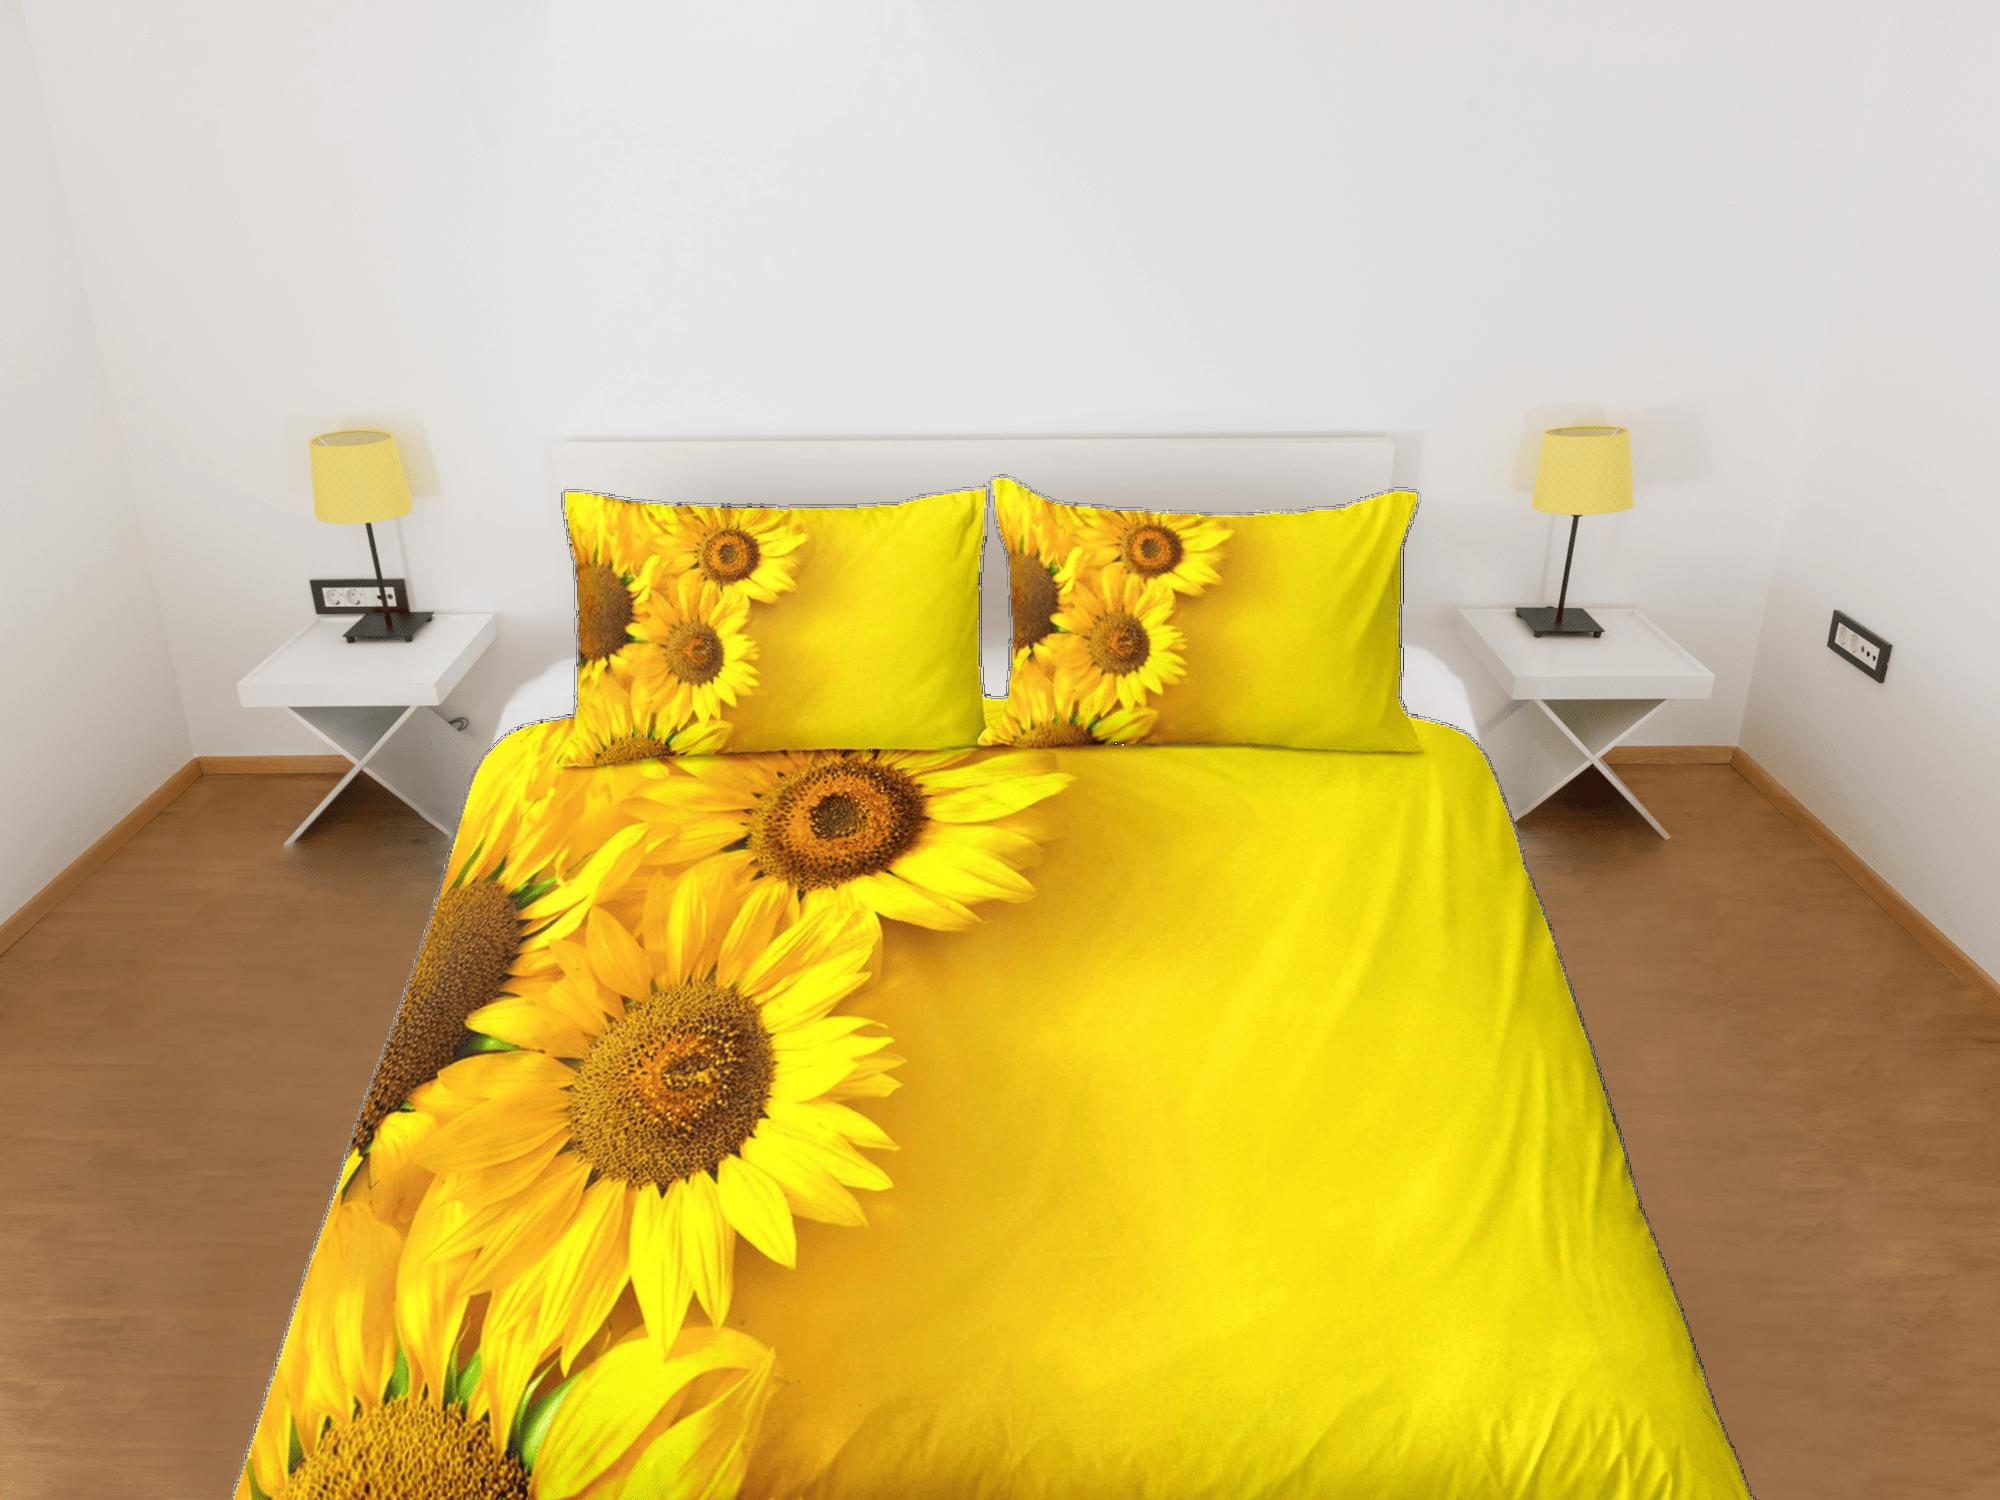 daintyduvet Sunflower floral bedding, yellow duvet cover queen, king, boho duvet, designer bedding, aesthetic bedding, maximalist full size bedding